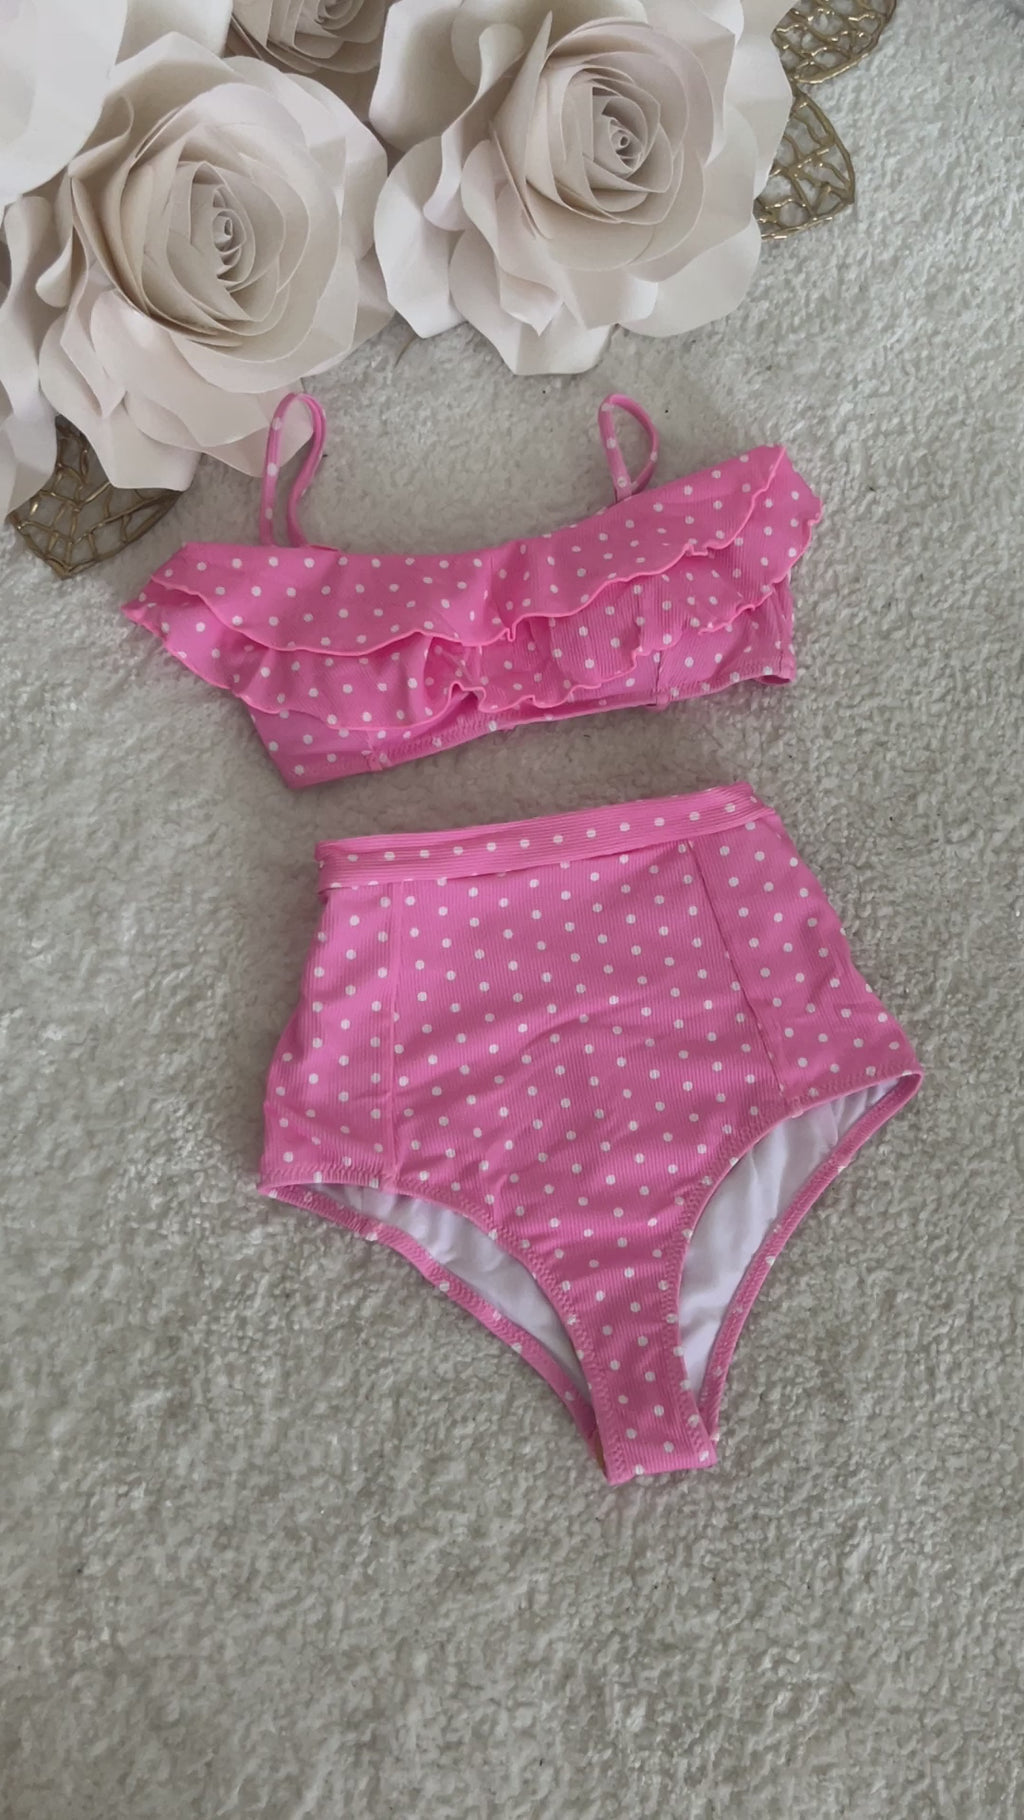 Kupaći kostim Lara u roze boji - Contessa Moda kupaći kostimi